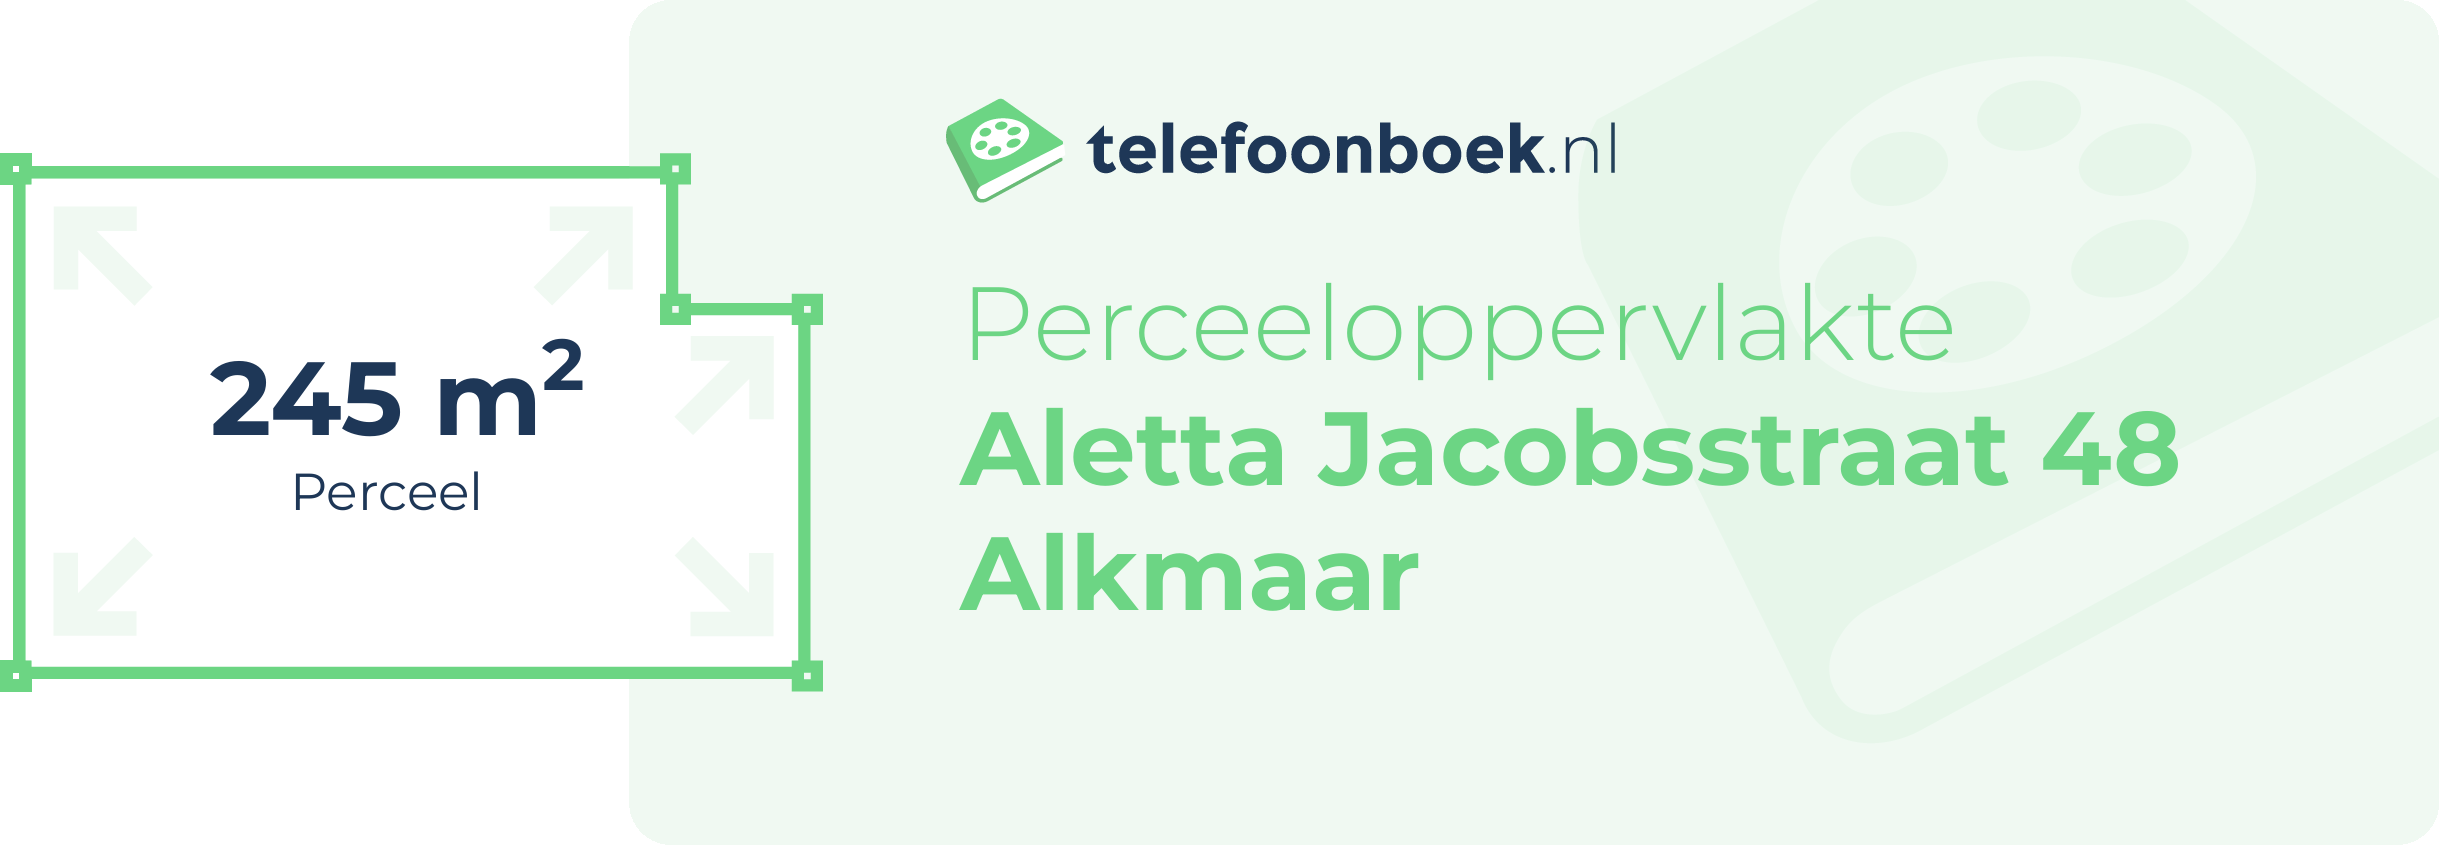 Perceeloppervlakte Aletta Jacobsstraat 48 Alkmaar